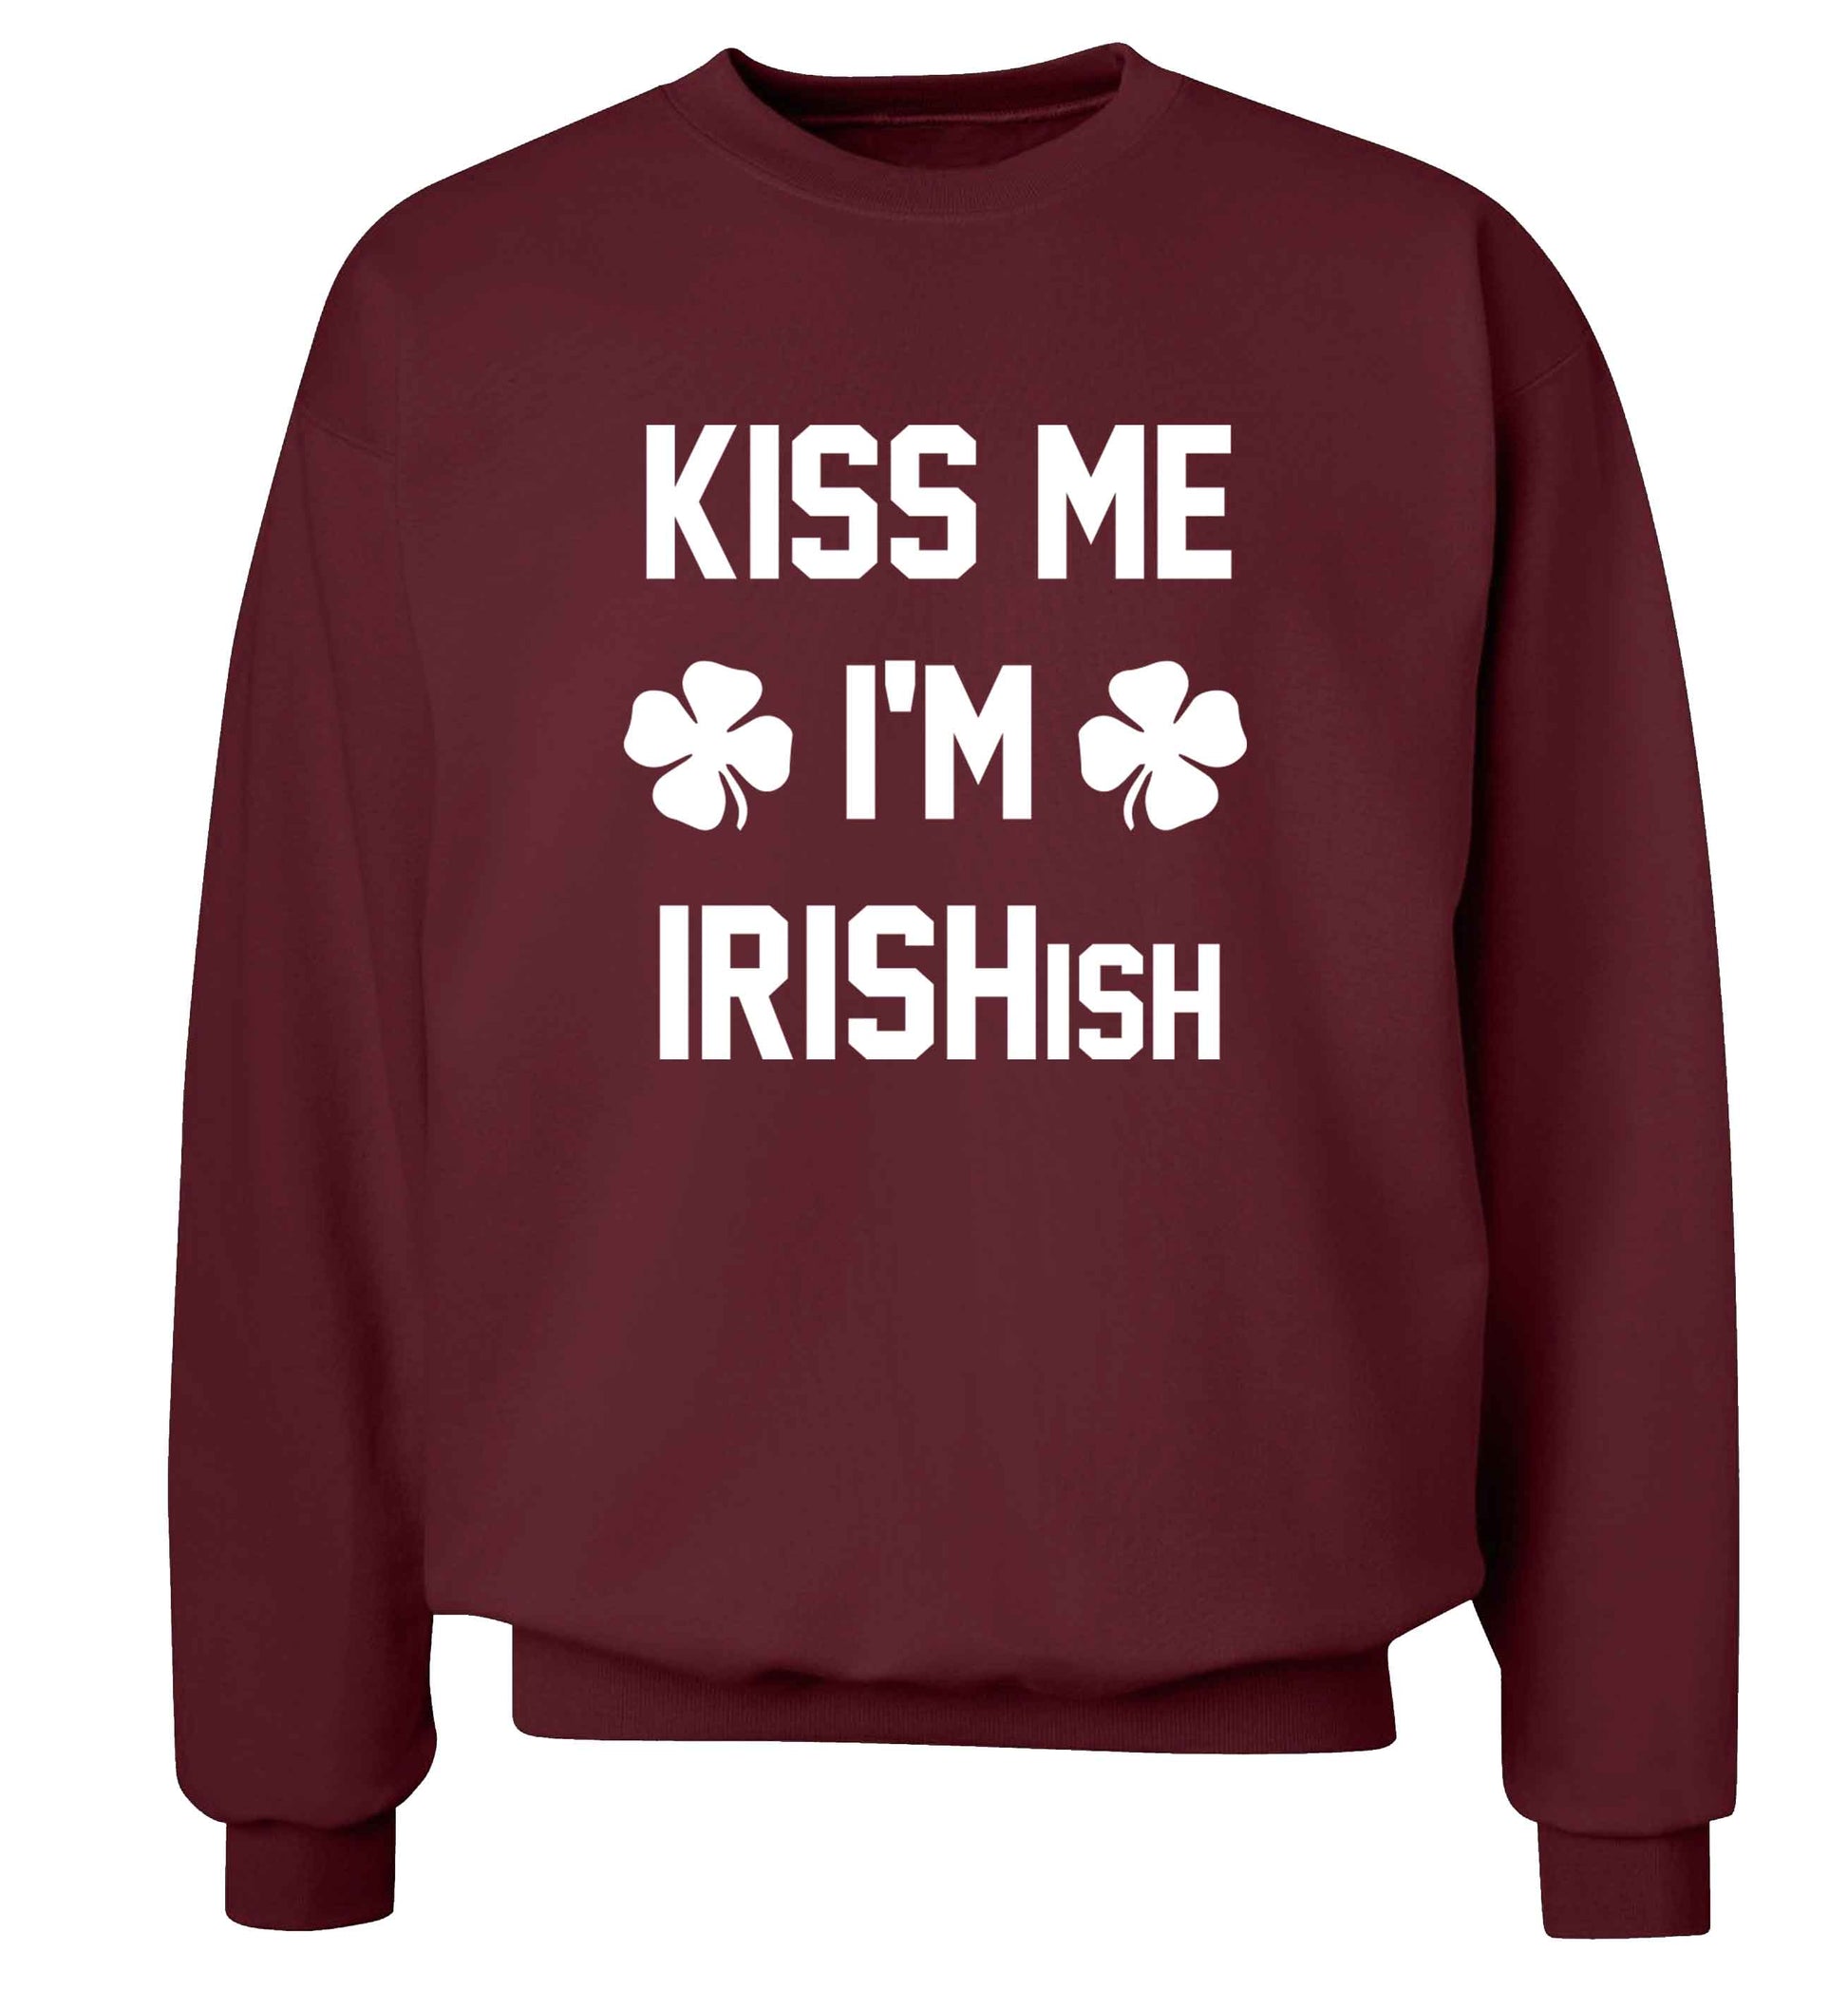 Kiss me I'm Irishish adult's unisex maroon sweater 2XL